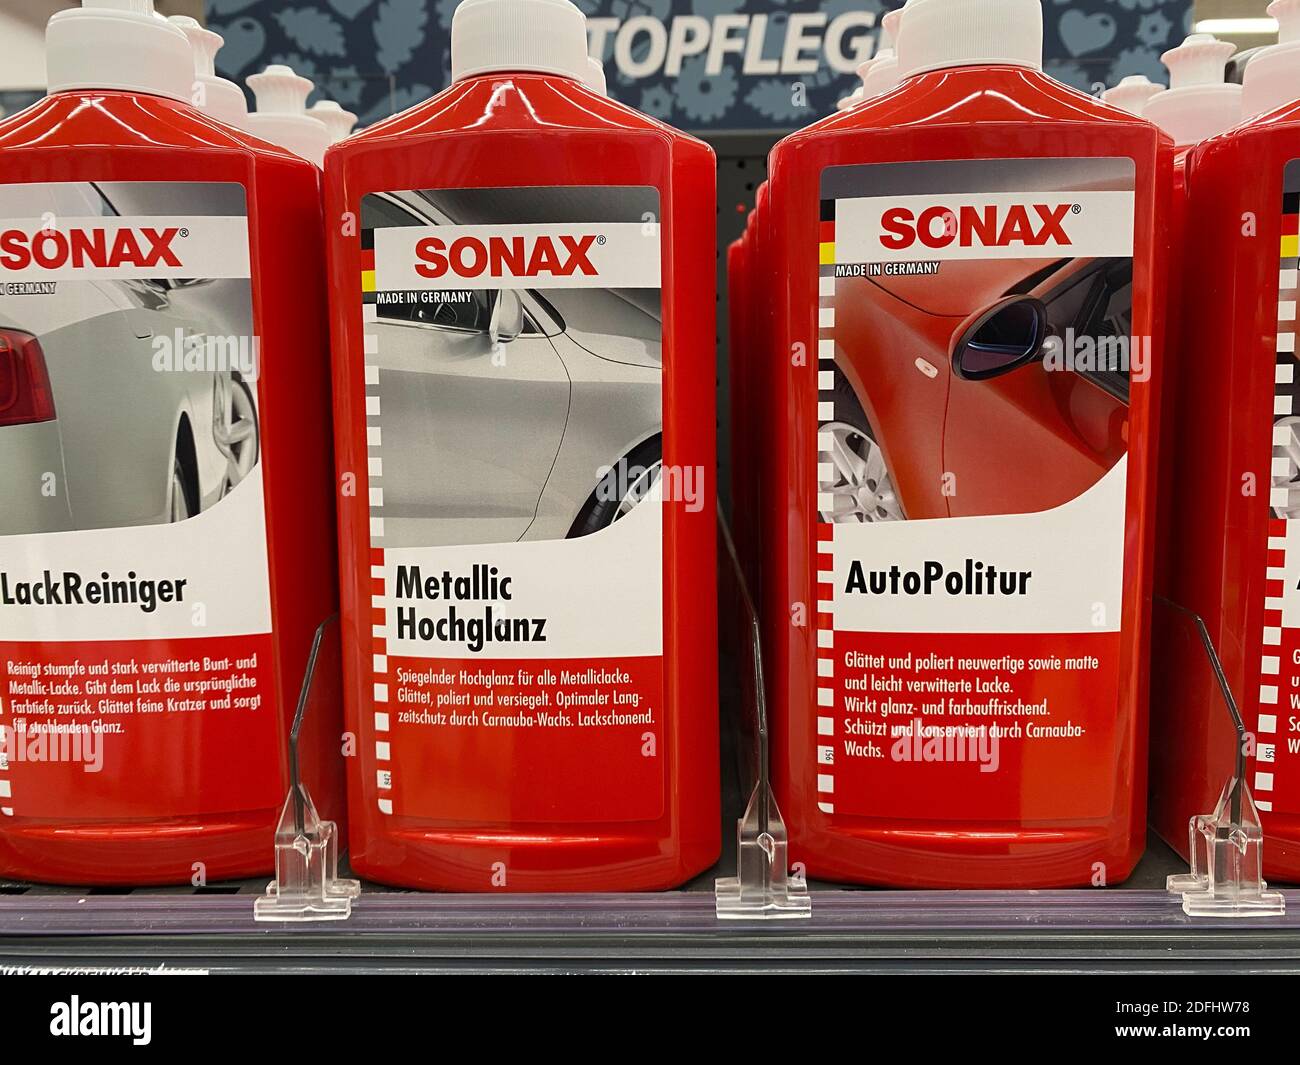 SONAX SX90 Plus aceite multifunción, fondo blanco Fotografía de